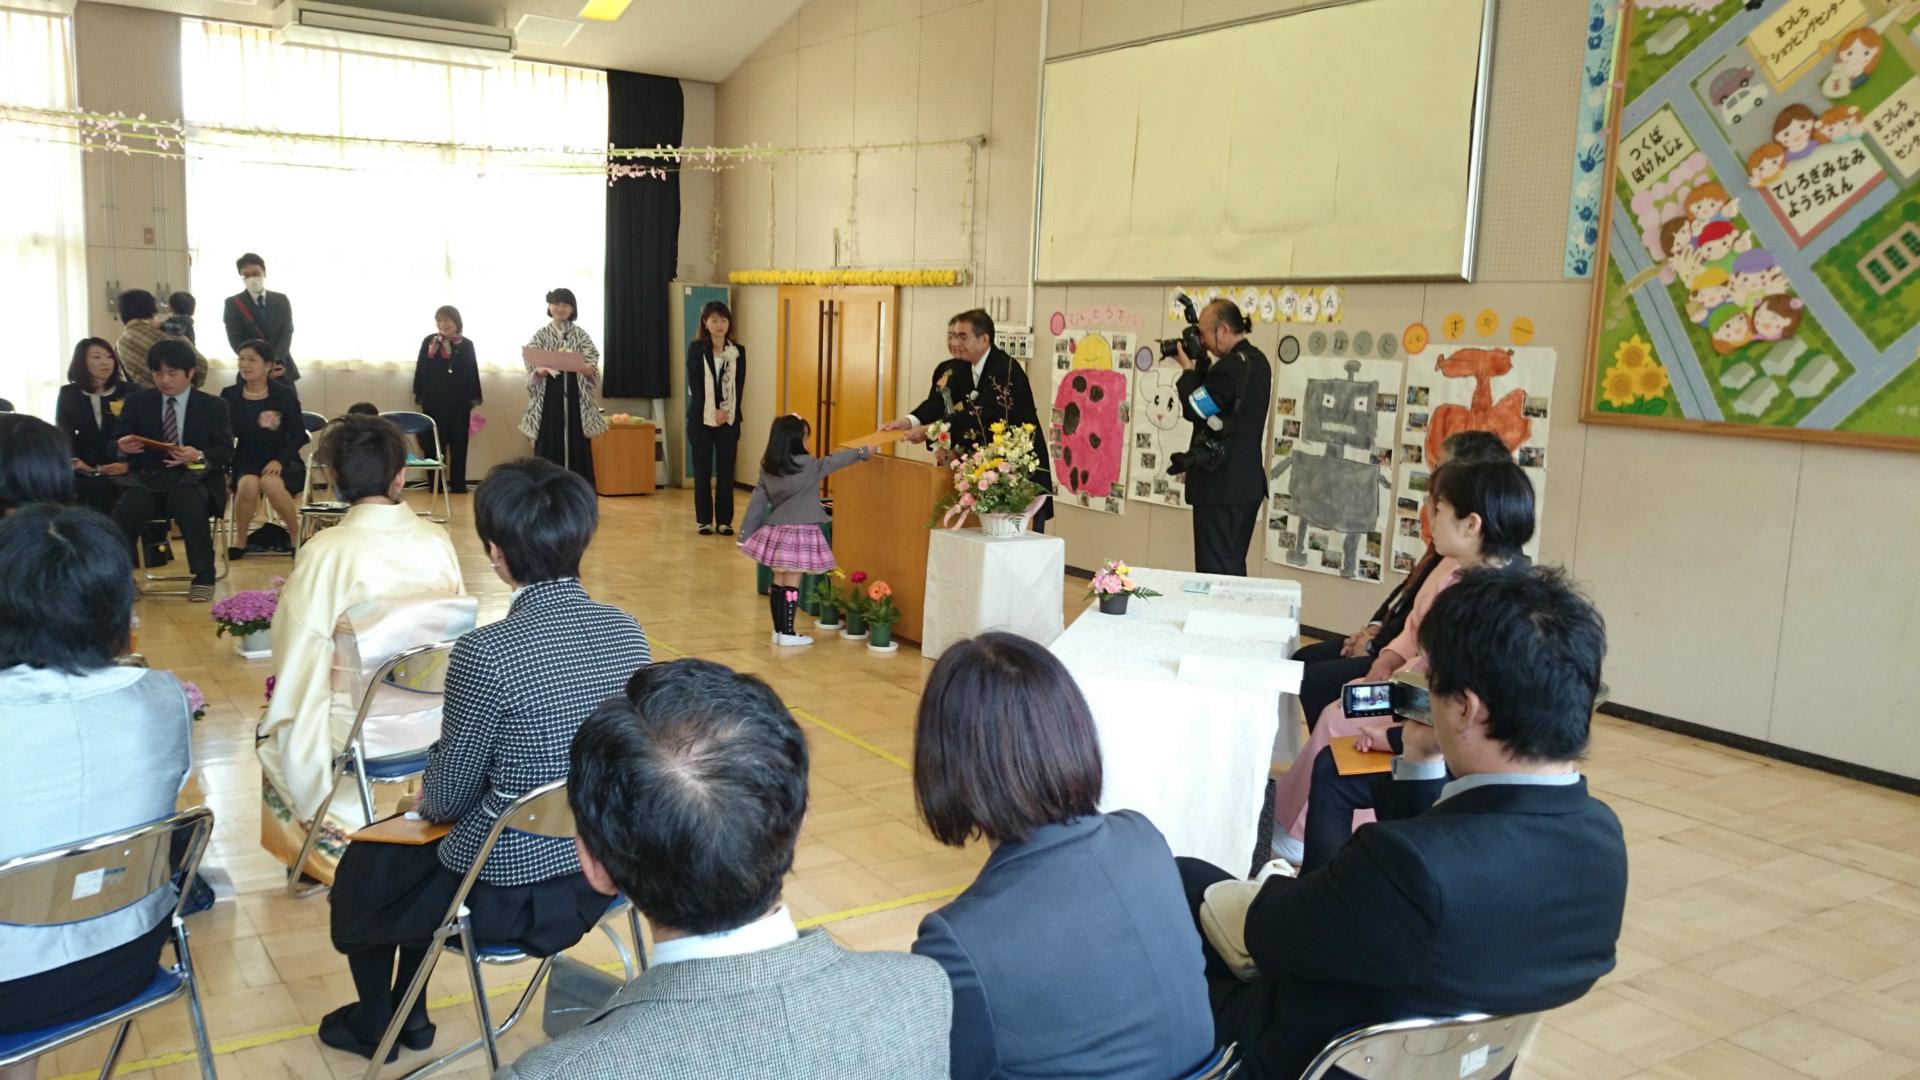 祝 ご卒園 公立幼稚園の卒園式が執り行われました 茨城県議会議員 星田こうじ 行動派通信